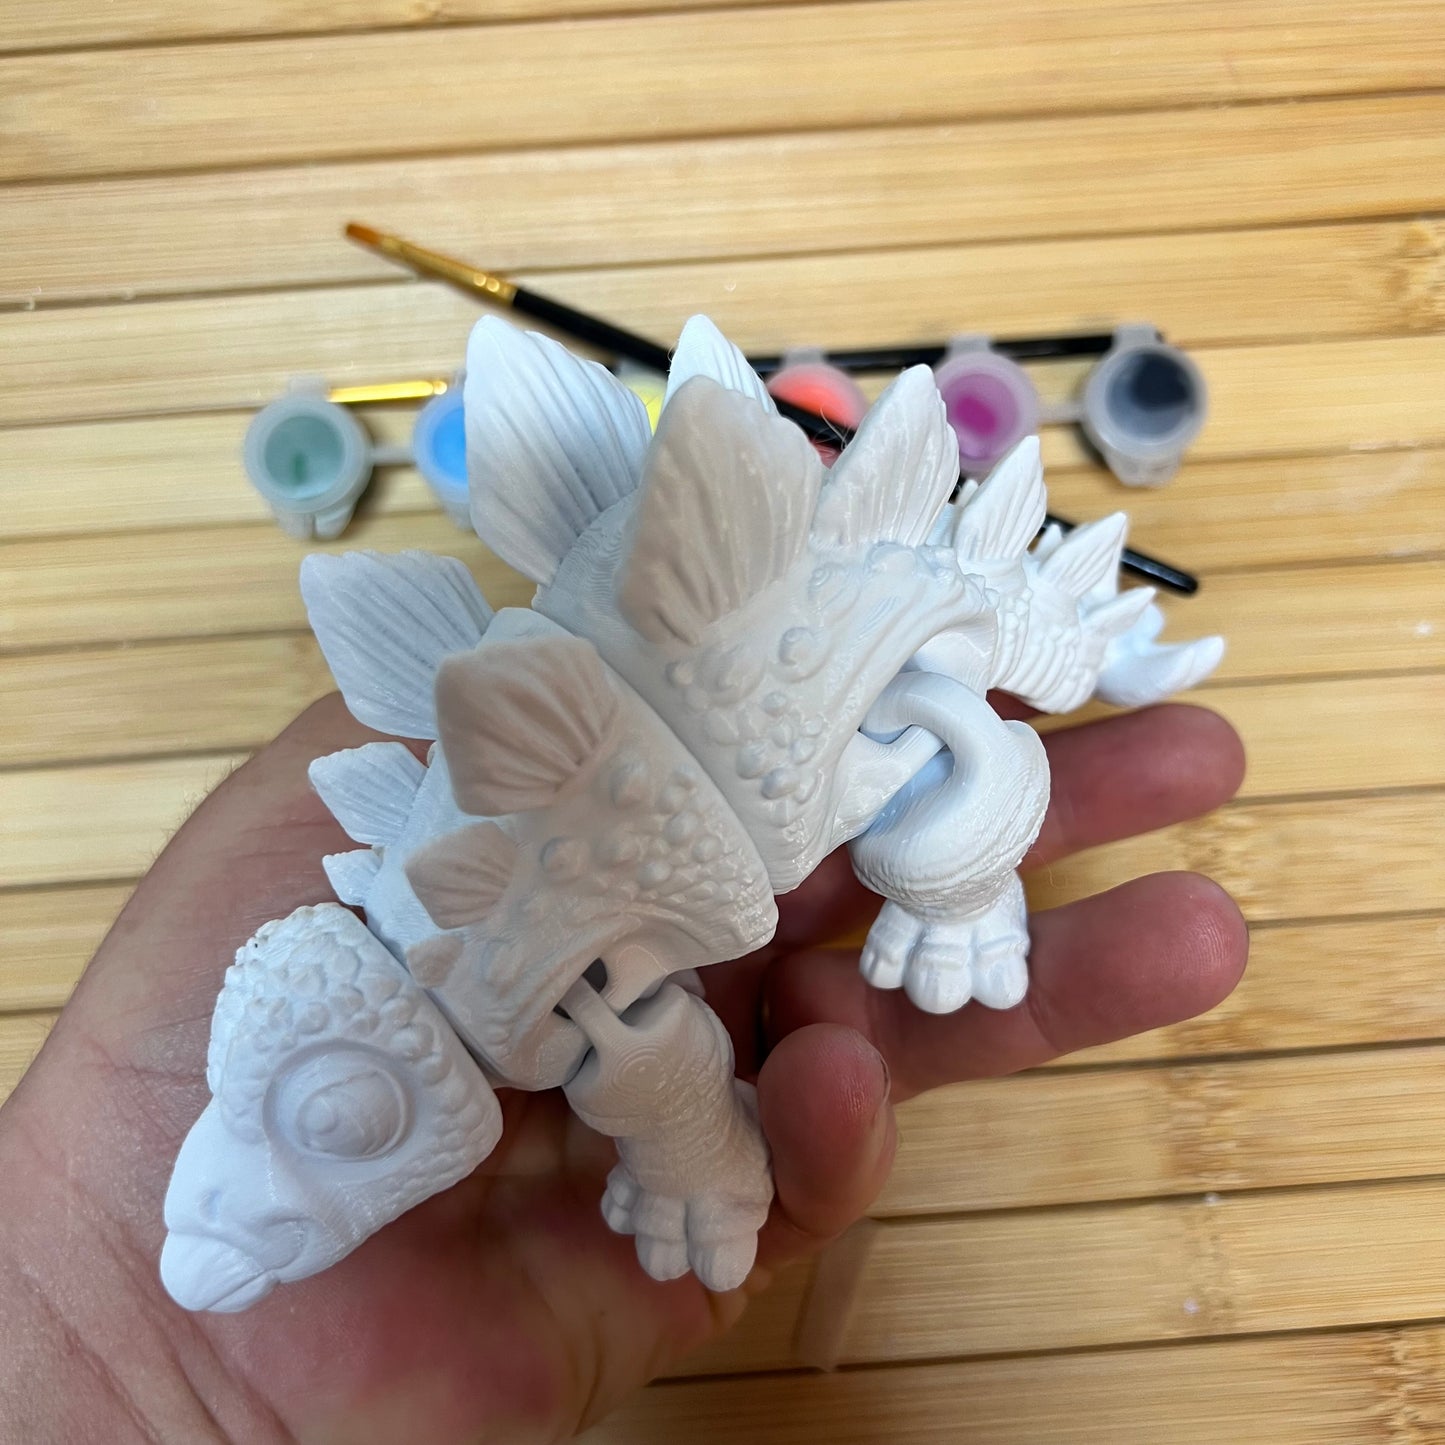 Wholesale Paint Your Own 3D Prints Kits x5